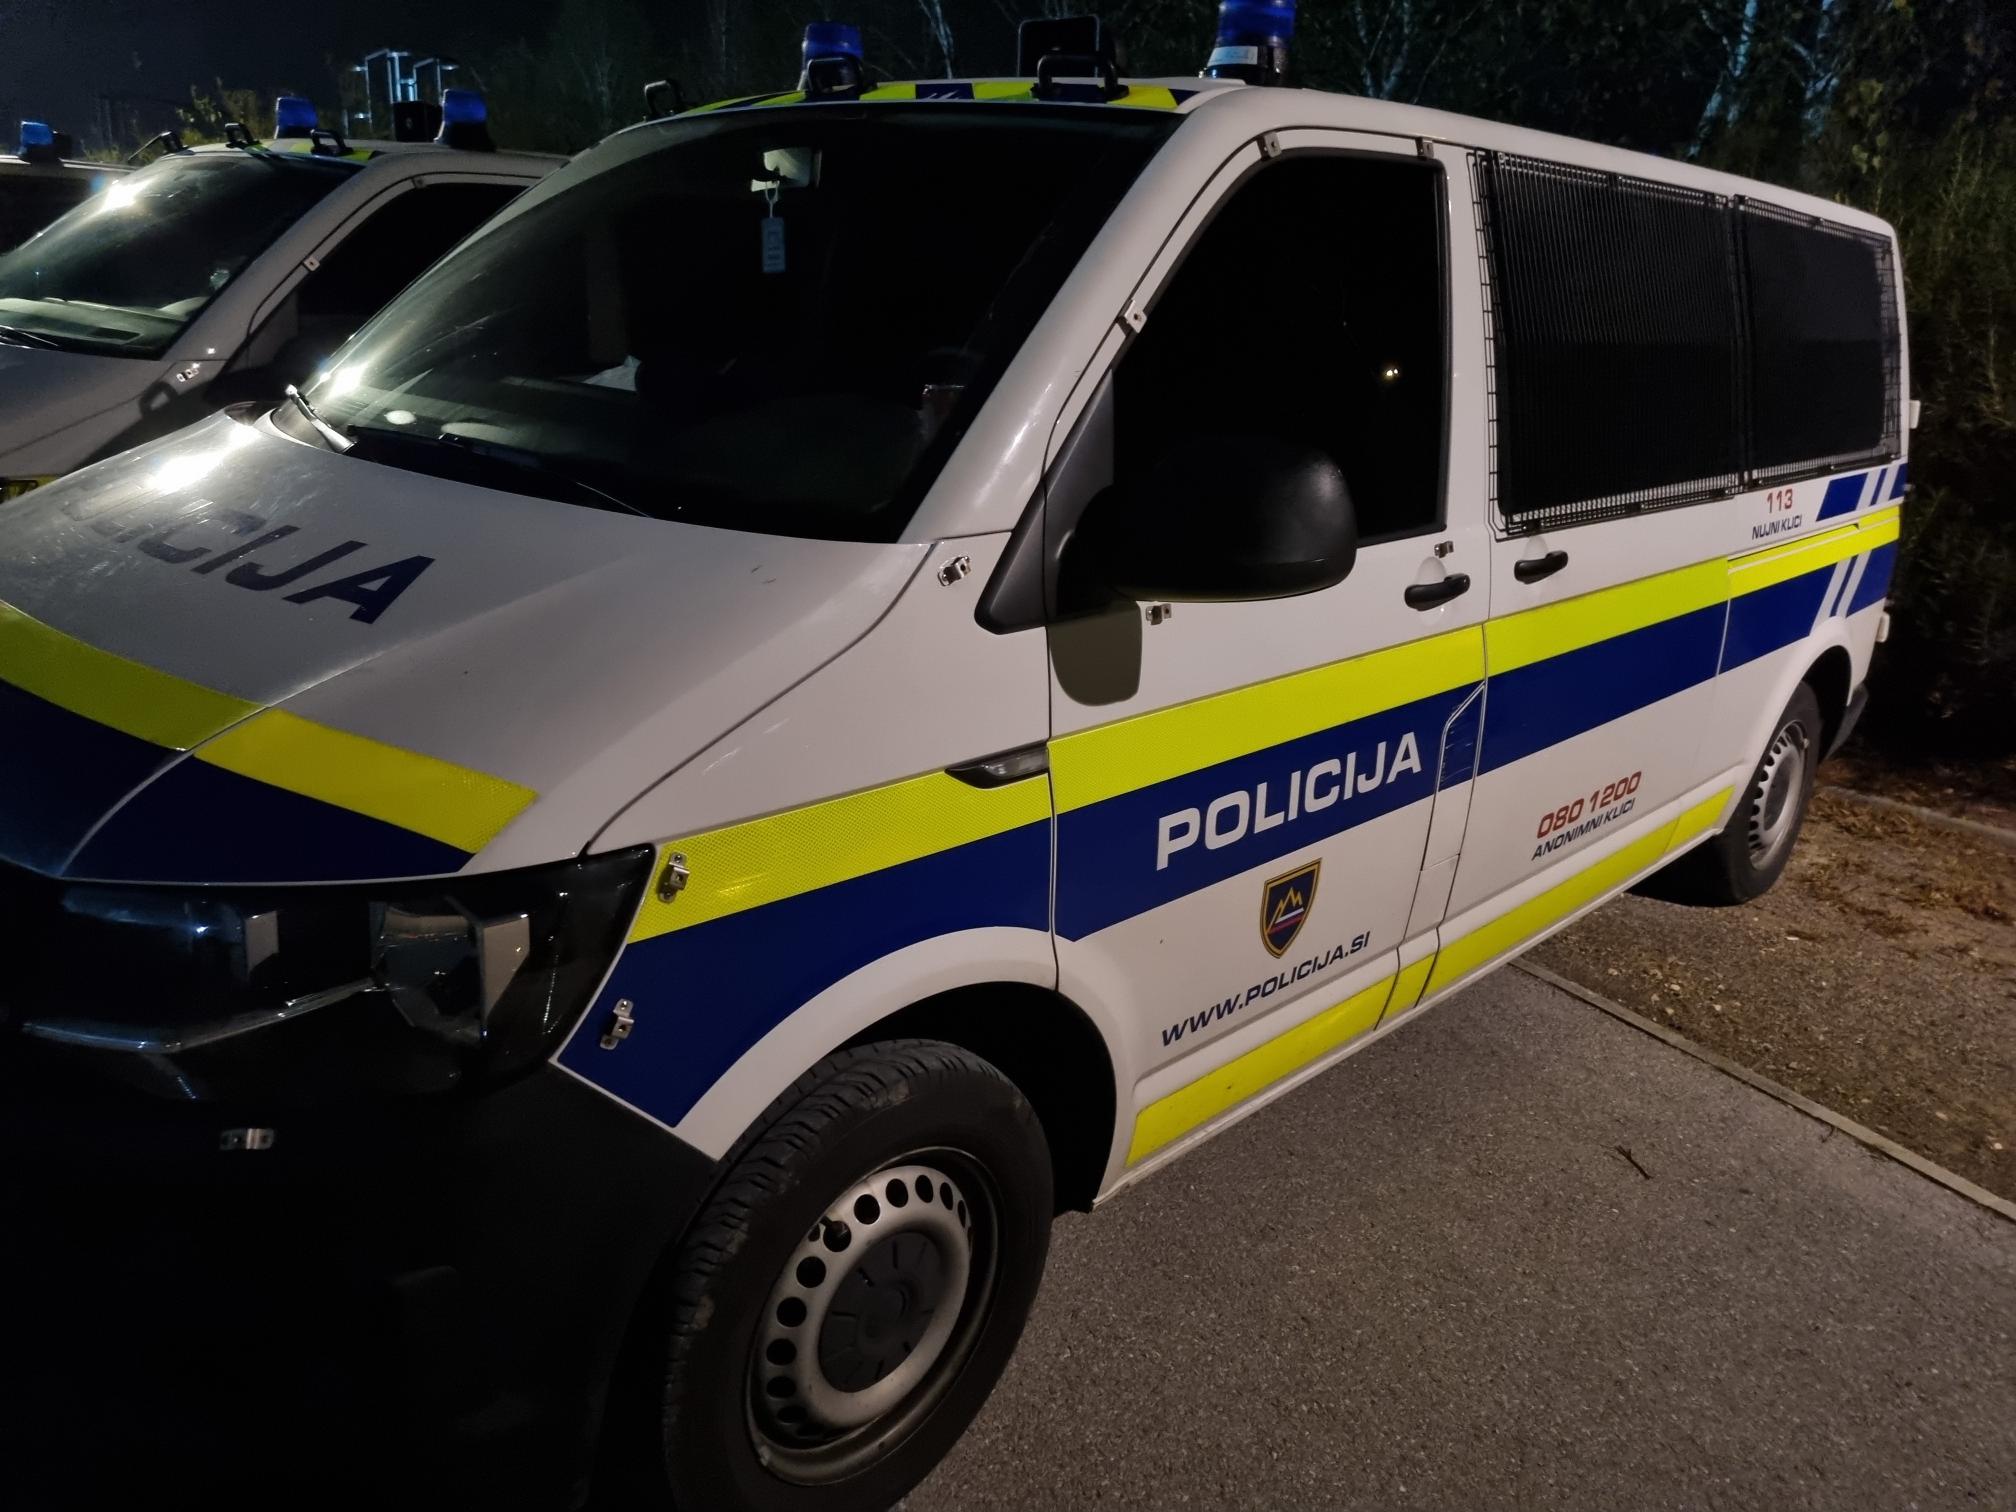 La police a inculpé un citoyen de Serbie et de Bosnie-Herzégovine pour avoir transporté des migrants illégaux